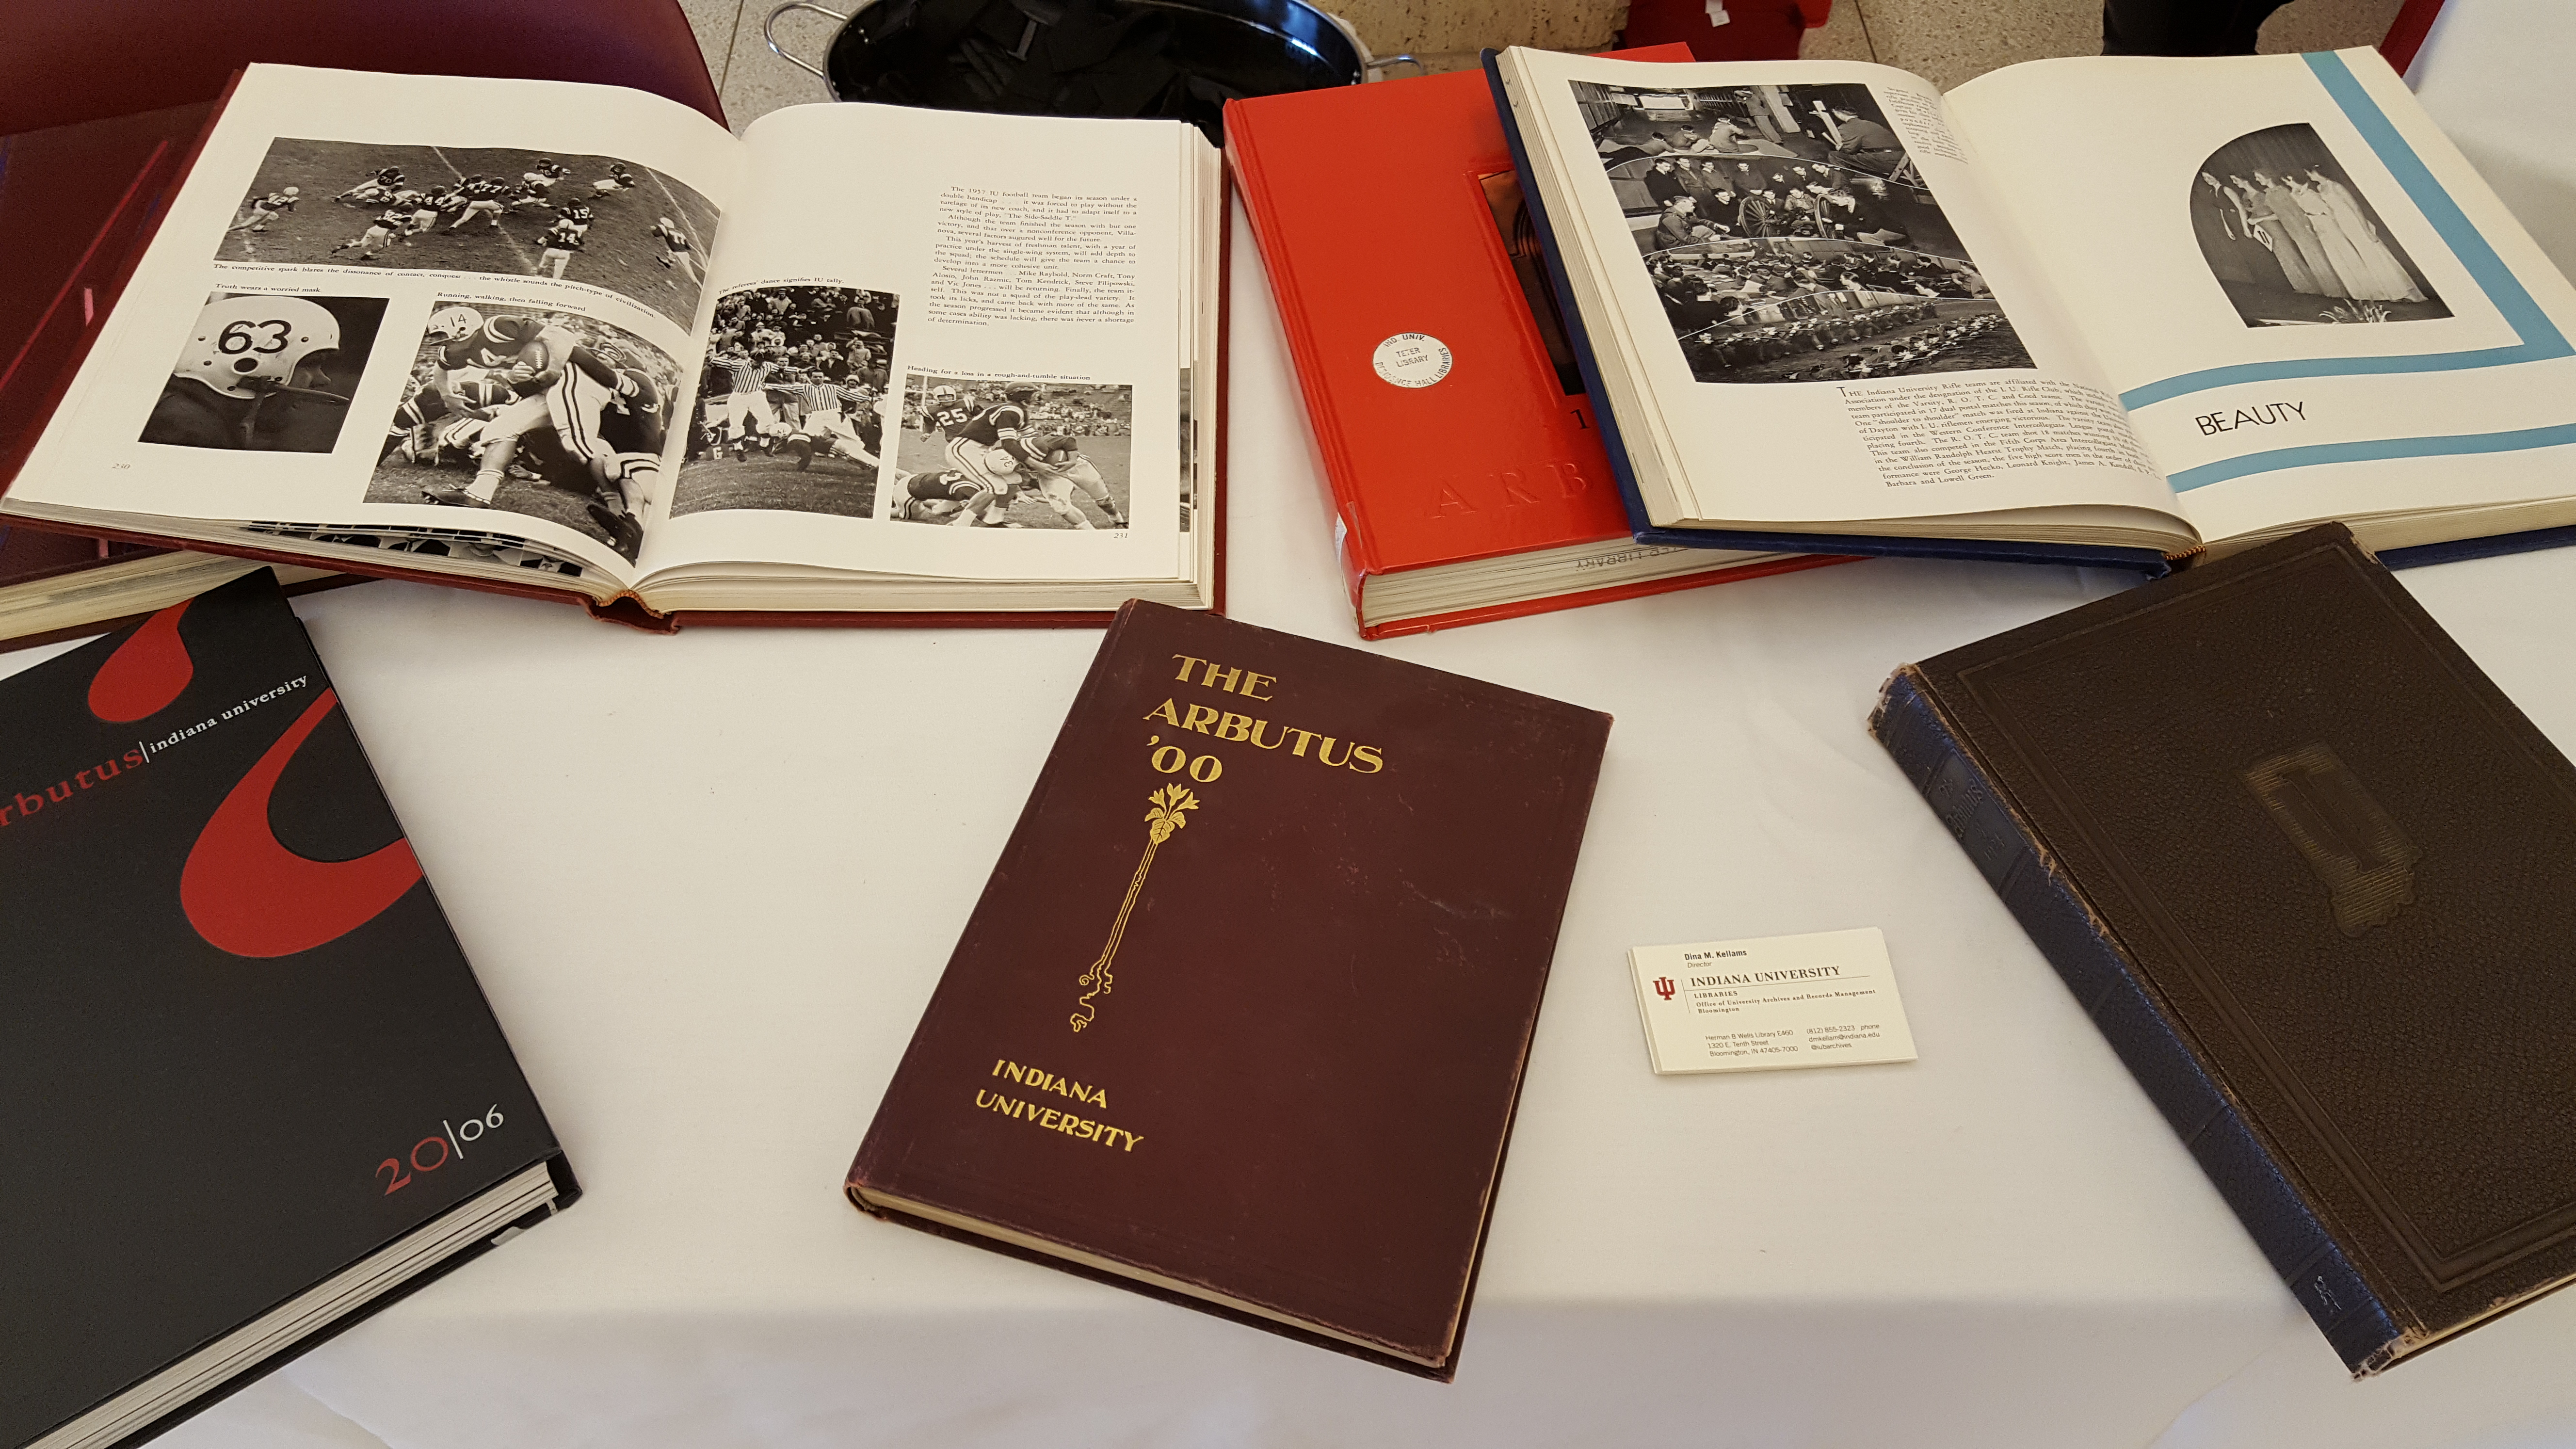 Volumes of IU's yearbook on display